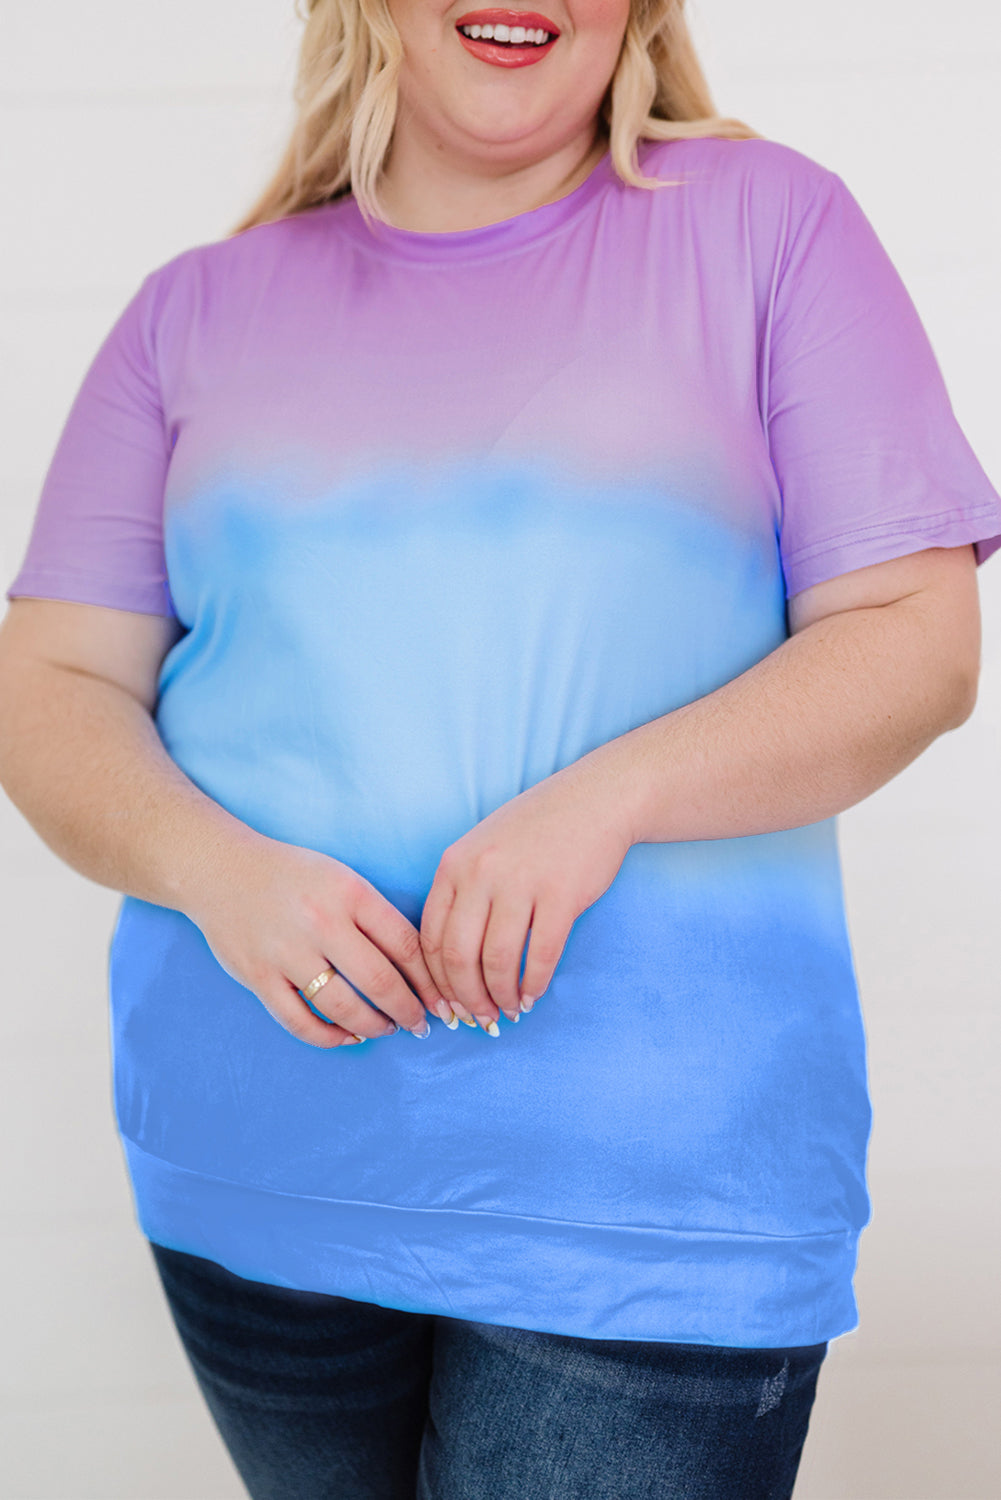 Ljubičasta majica veće veličine s okruglim izrezom i obojenom bojom u boji